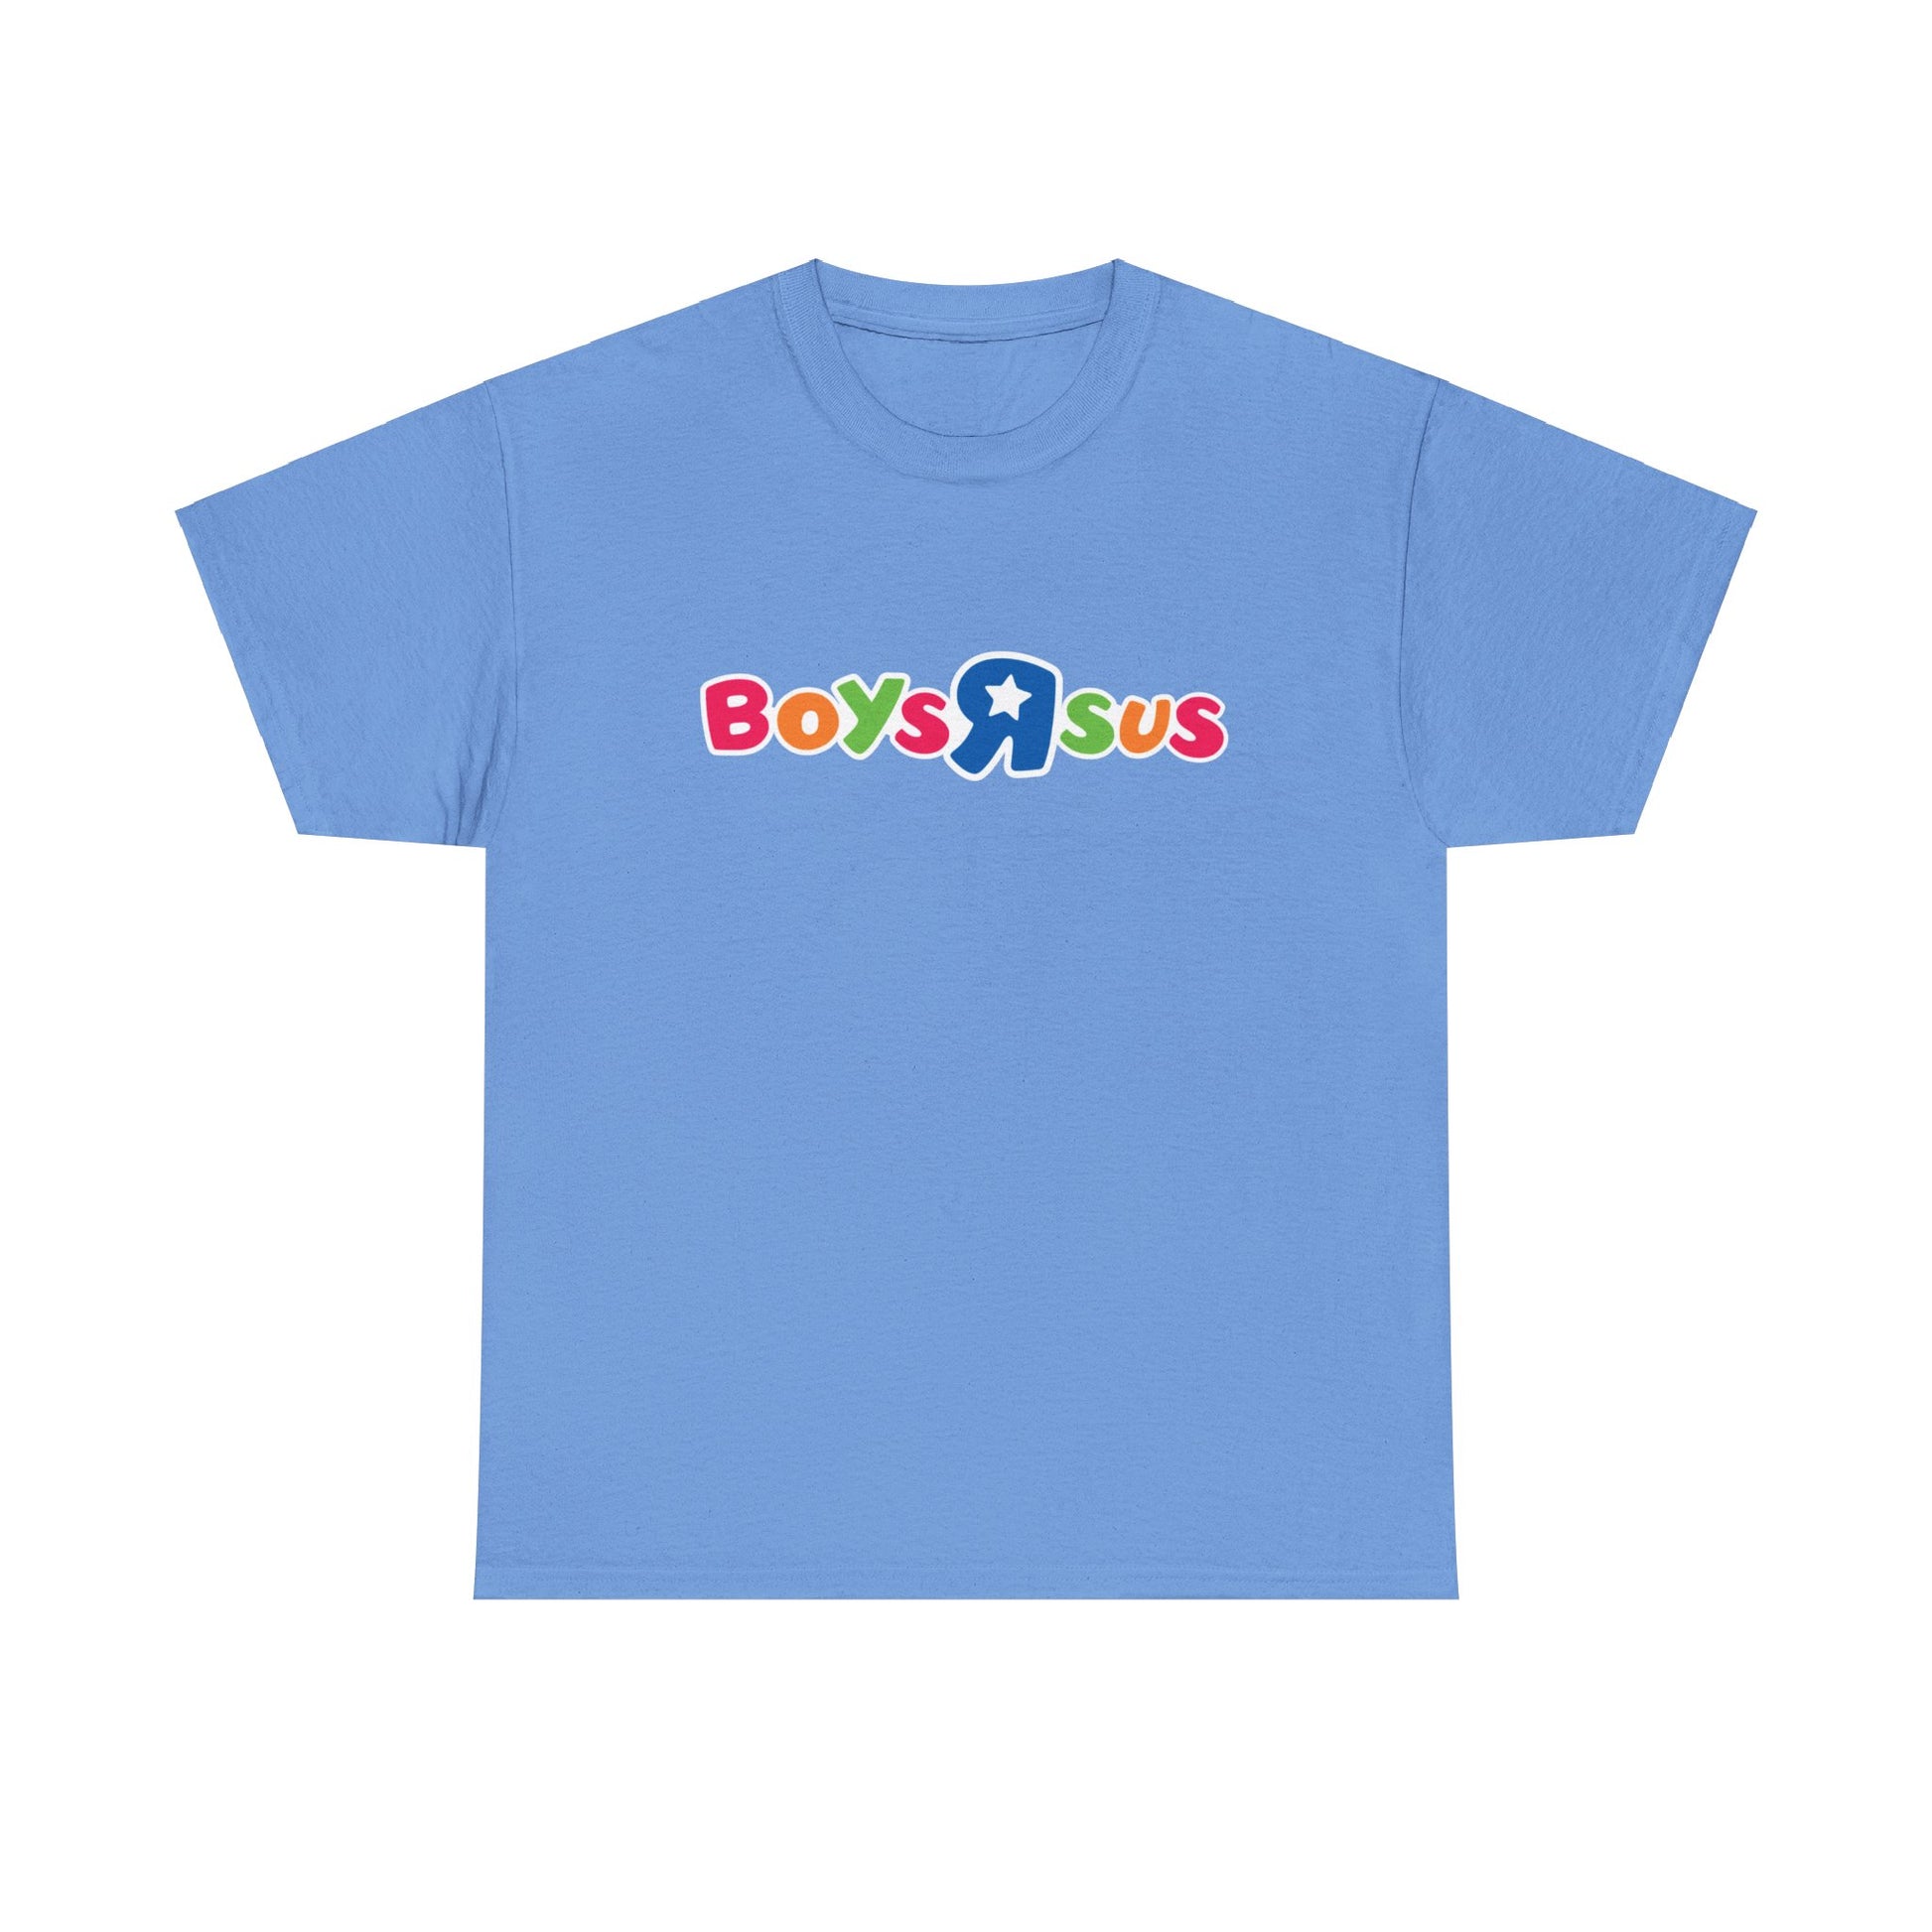 Holen Sie sich das Must-Have BoysRSus Pride Month Shirt! Dieses einzigartige Streetwear-Stück zeigt das kultische BoysRSus Logo, inspiriert von ToysRUs, in einer bunten Pride-Version. Ein Statement für die LGBTQ+ Community.